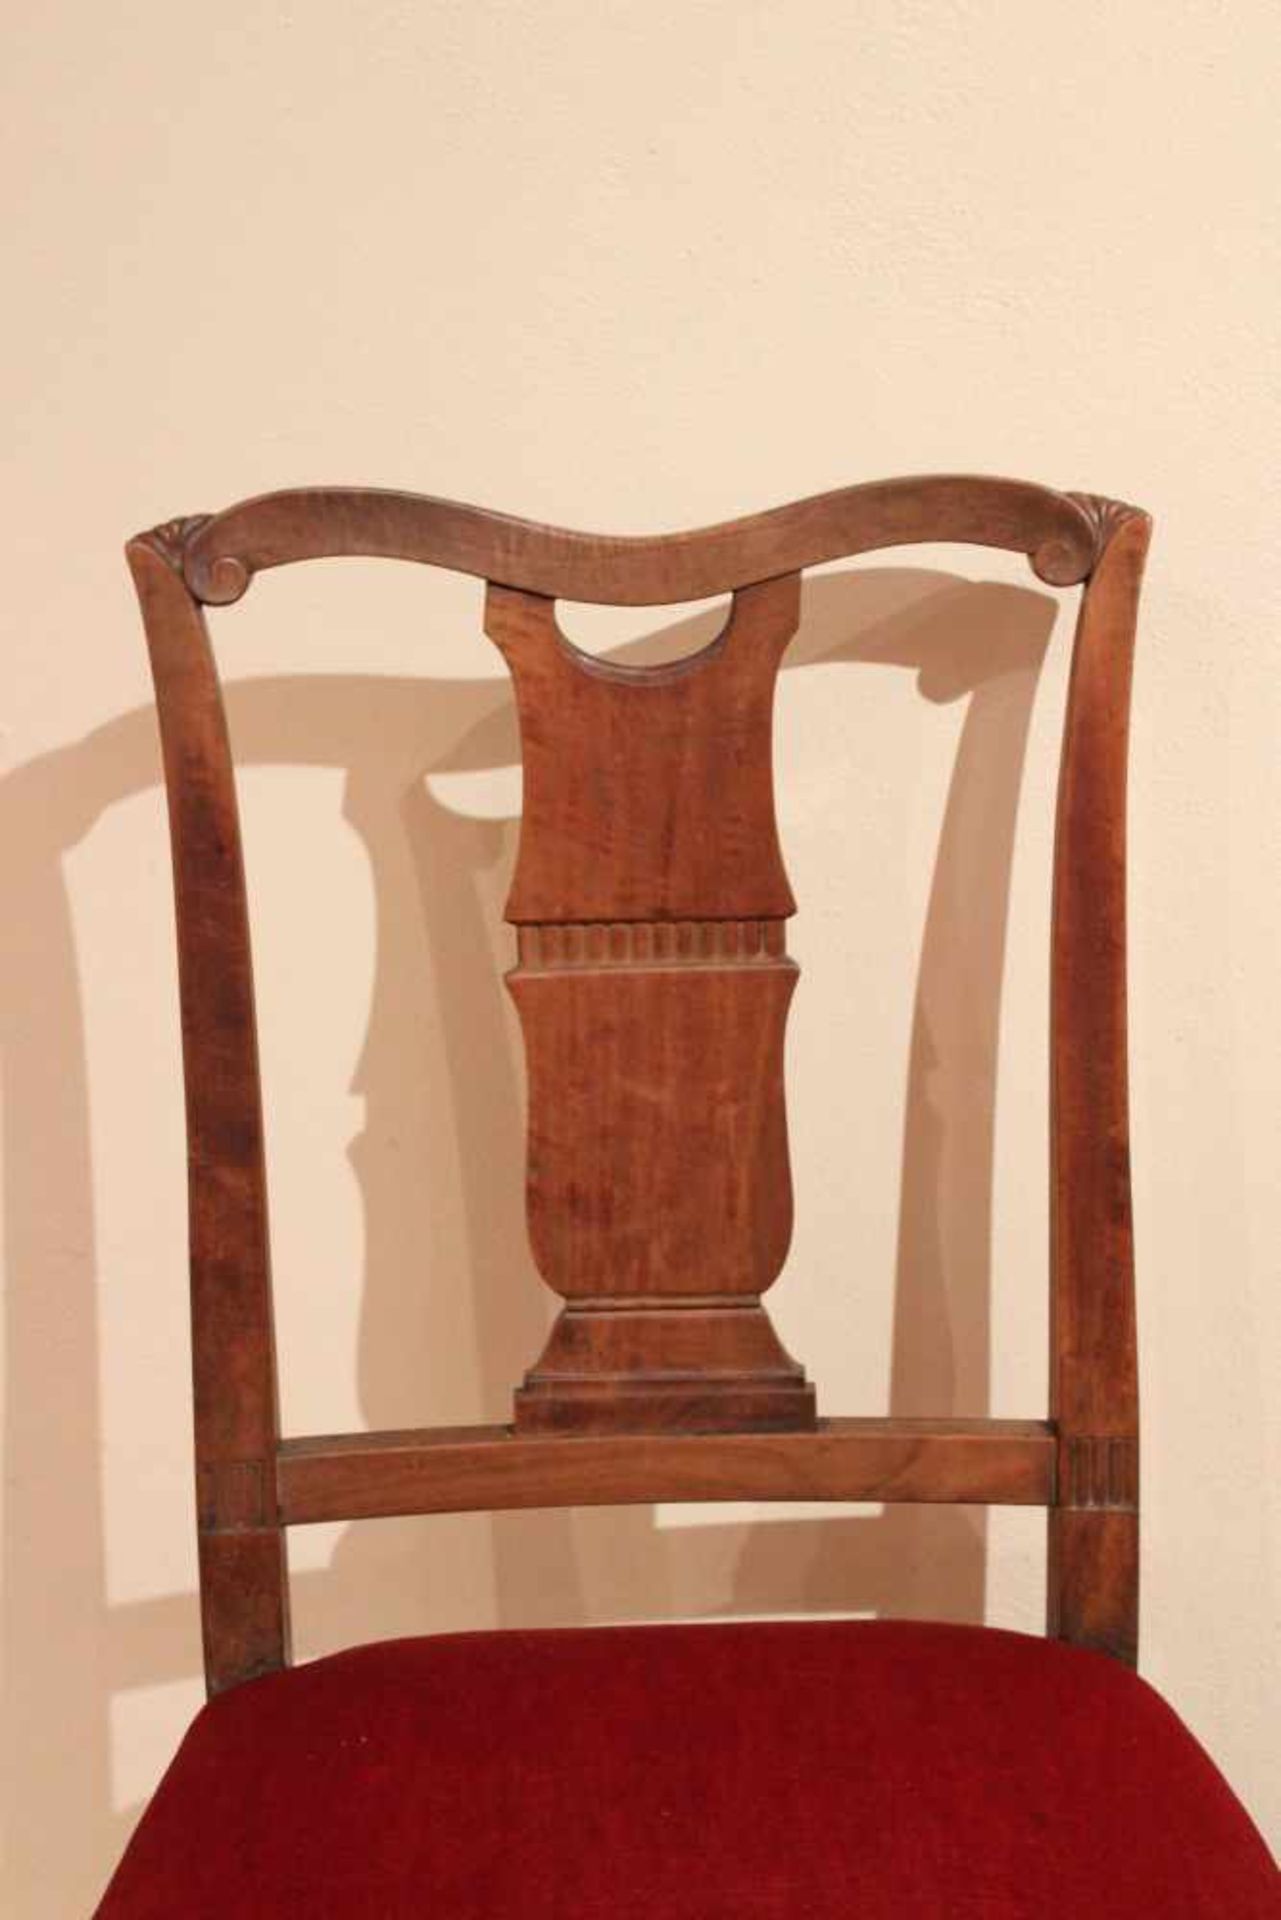 Paar Stühle.Um 1900. Mahagoni. Trapezförmiger Rahmen mit hoher beschnitzter Lehne. Gepolst - Bild 2 aus 2